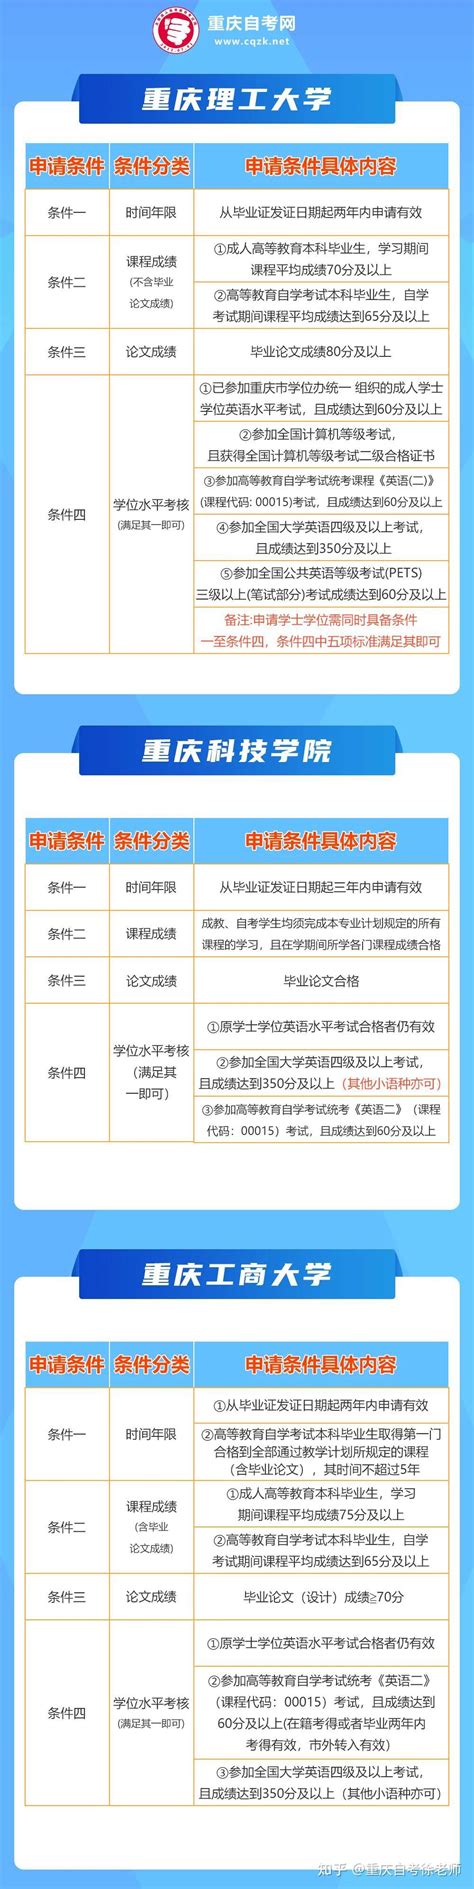 重庆自考毕业生网上申请毕业系统操作说明 - 自考生网